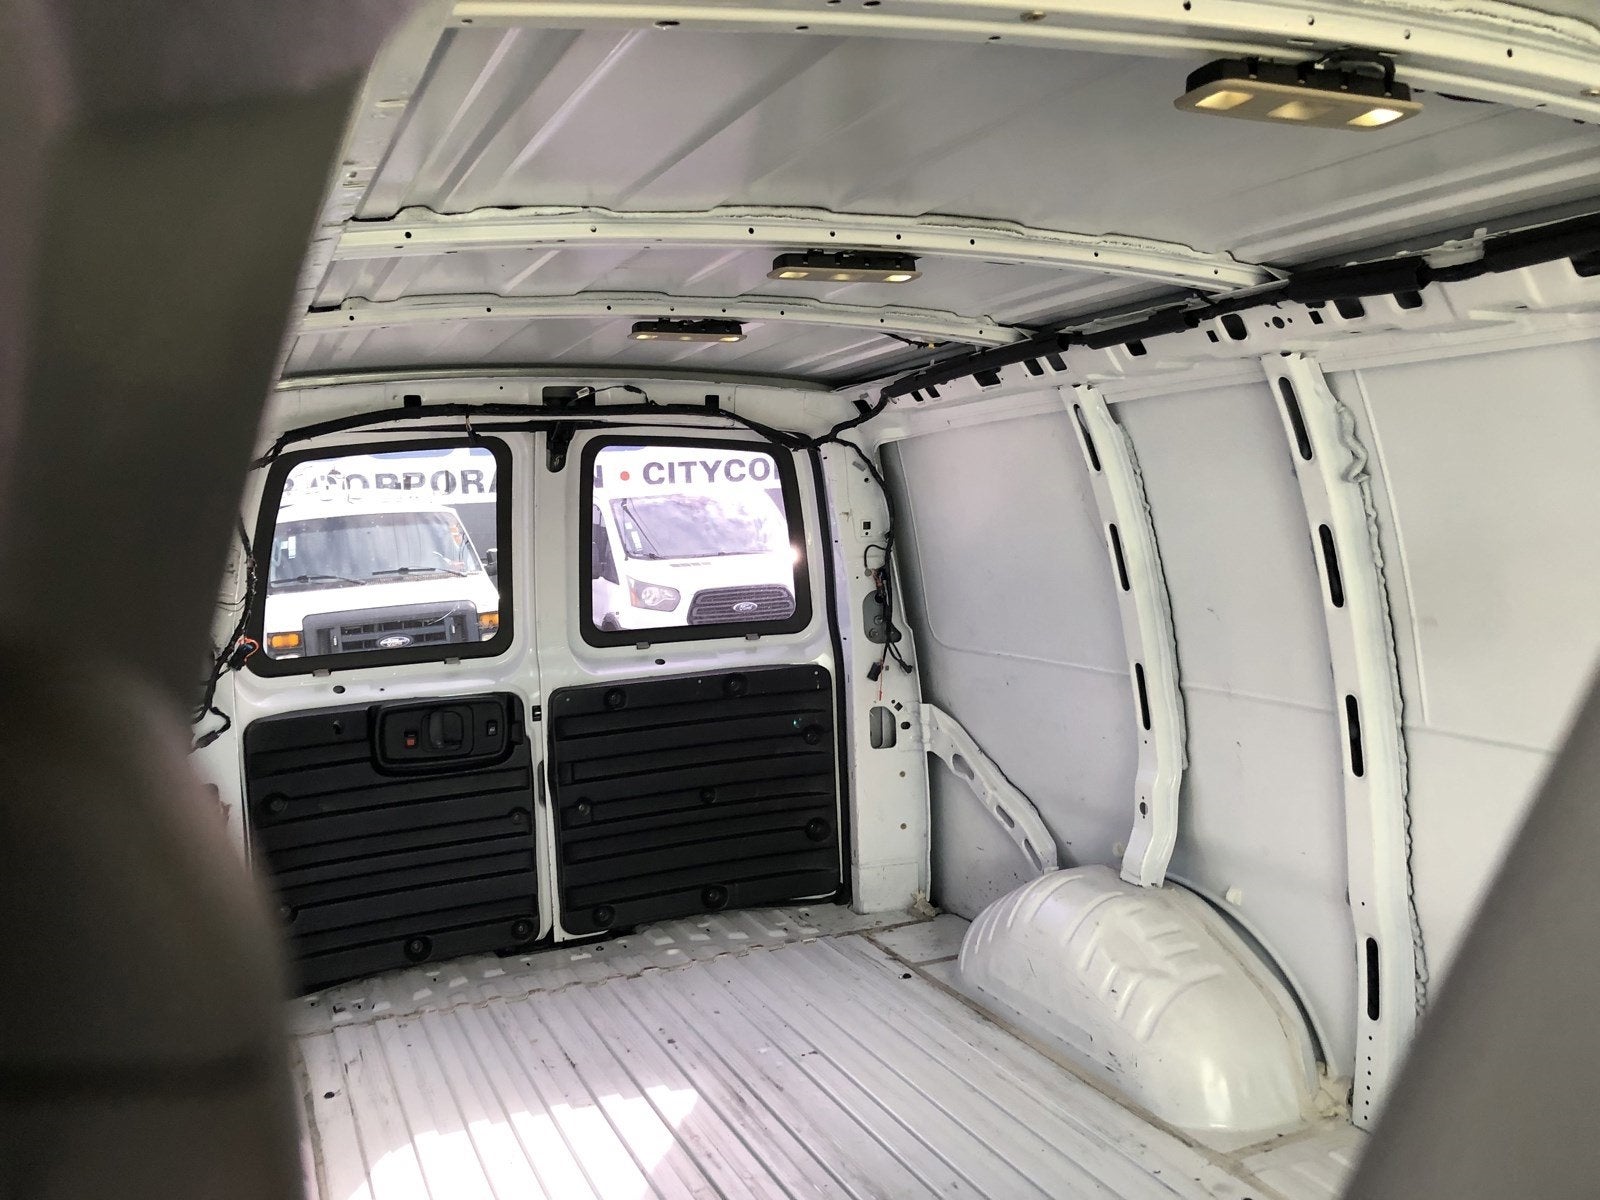 2019 Chevrolet Express Cargo Van RWD 2500 135"